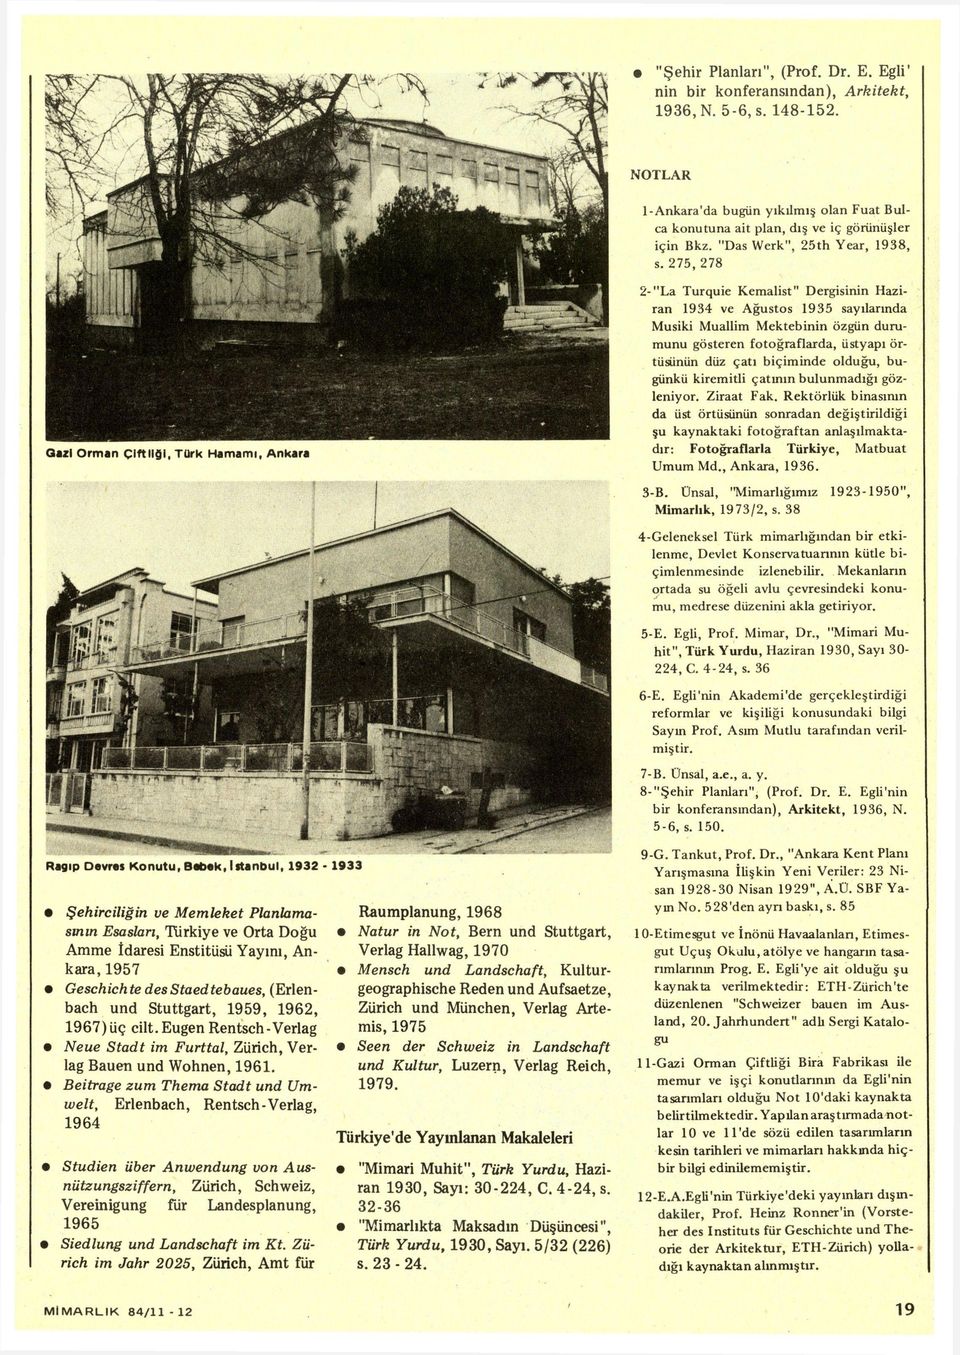 275, 278 2-"La Turquie Kemalist" Dergisinin Haziran 1934 ve Ağustos 1935 sayılarında Musiki Muallim Mektebinin özgün durumunu gösteren fotoğraflarda, üstyapı örtüsünün düz çatı biçiminde olduğu,